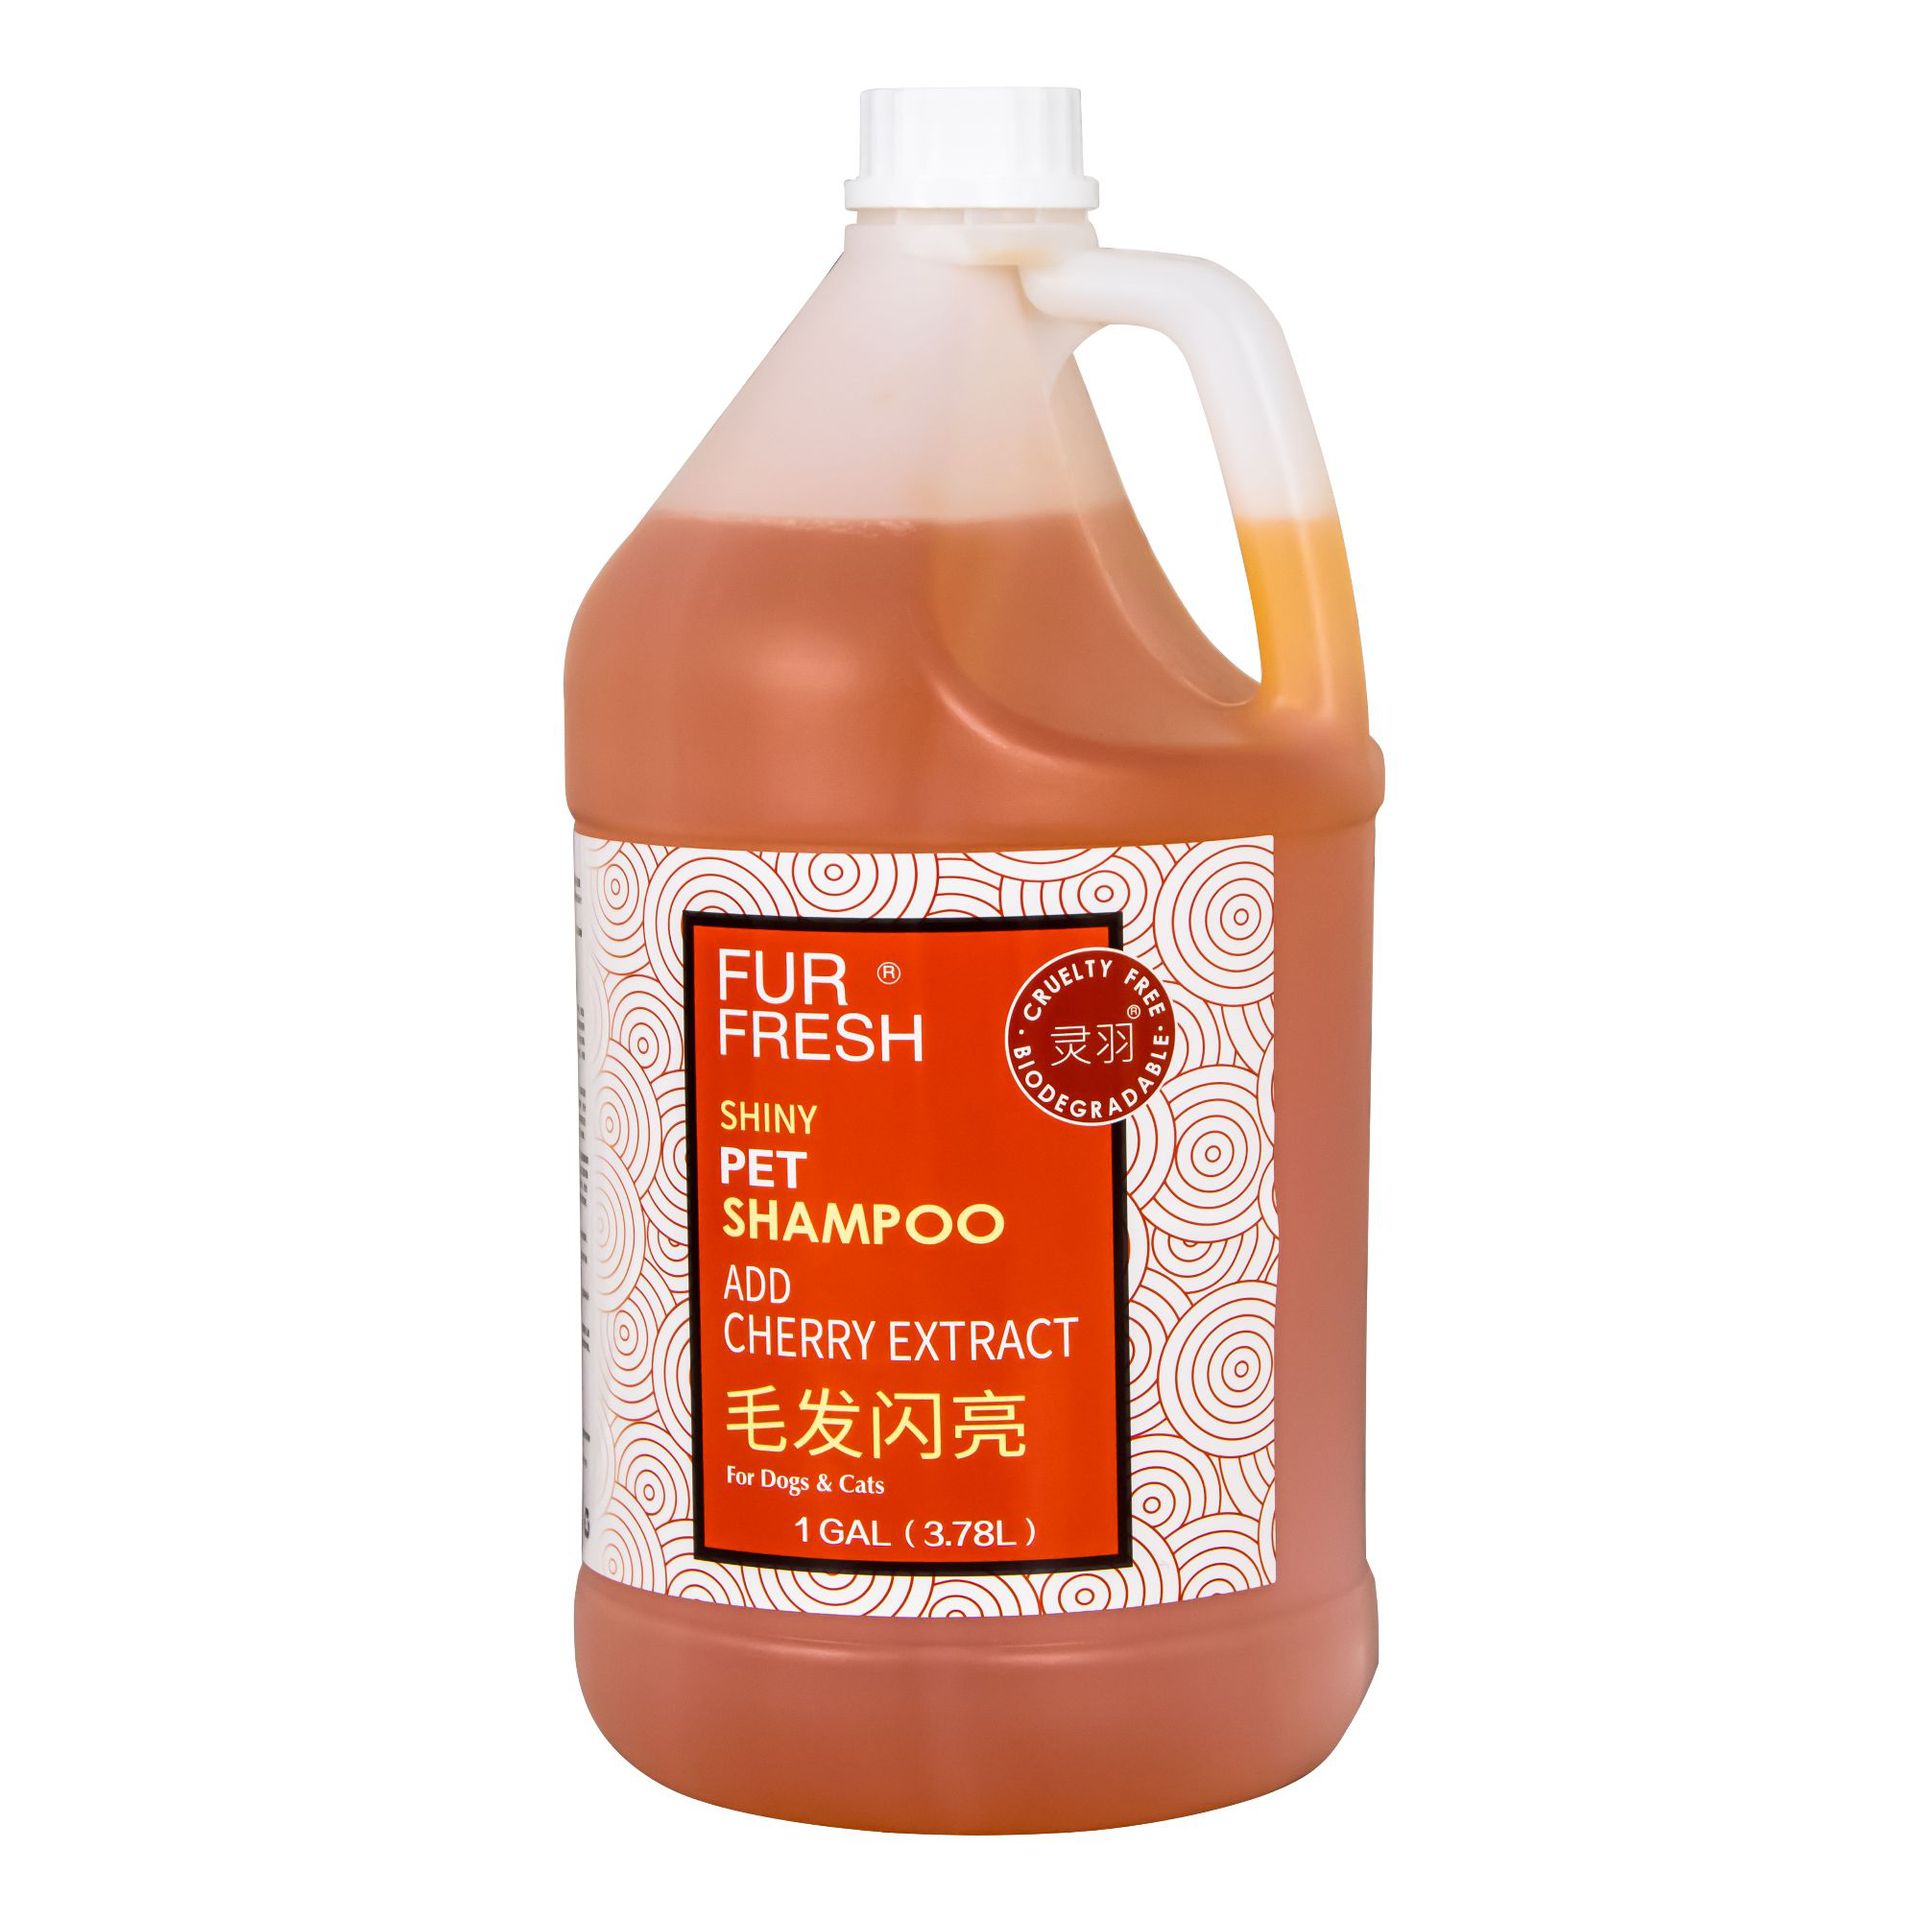 Ferret Shower Gel Bucket Golden Retriever Samo Teddy Bichon Body Lotion Dog Bath Shampoo Pet Supplies 3.78l